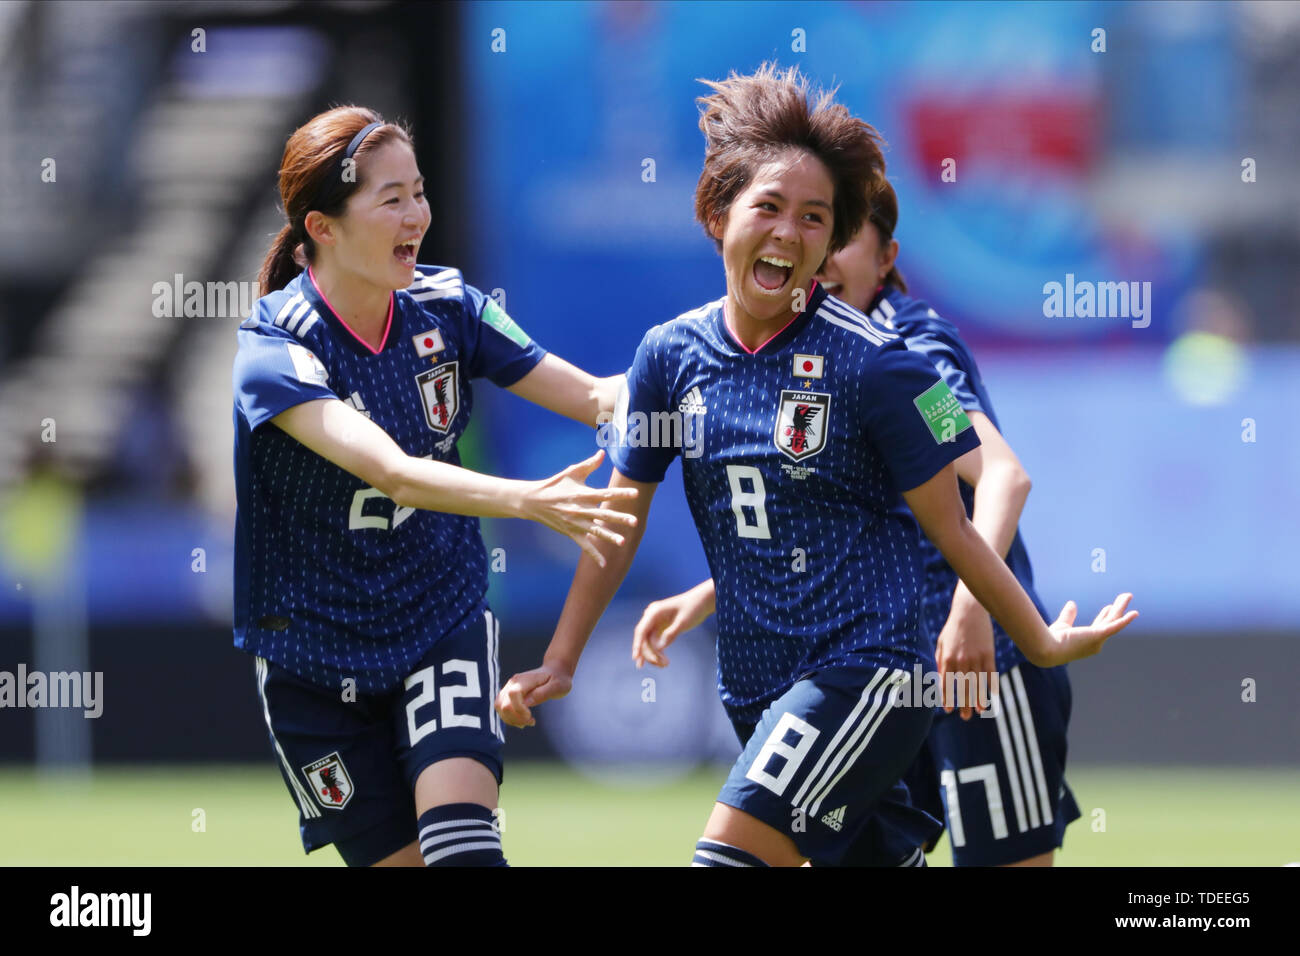 japan women's soccer jersey 2019